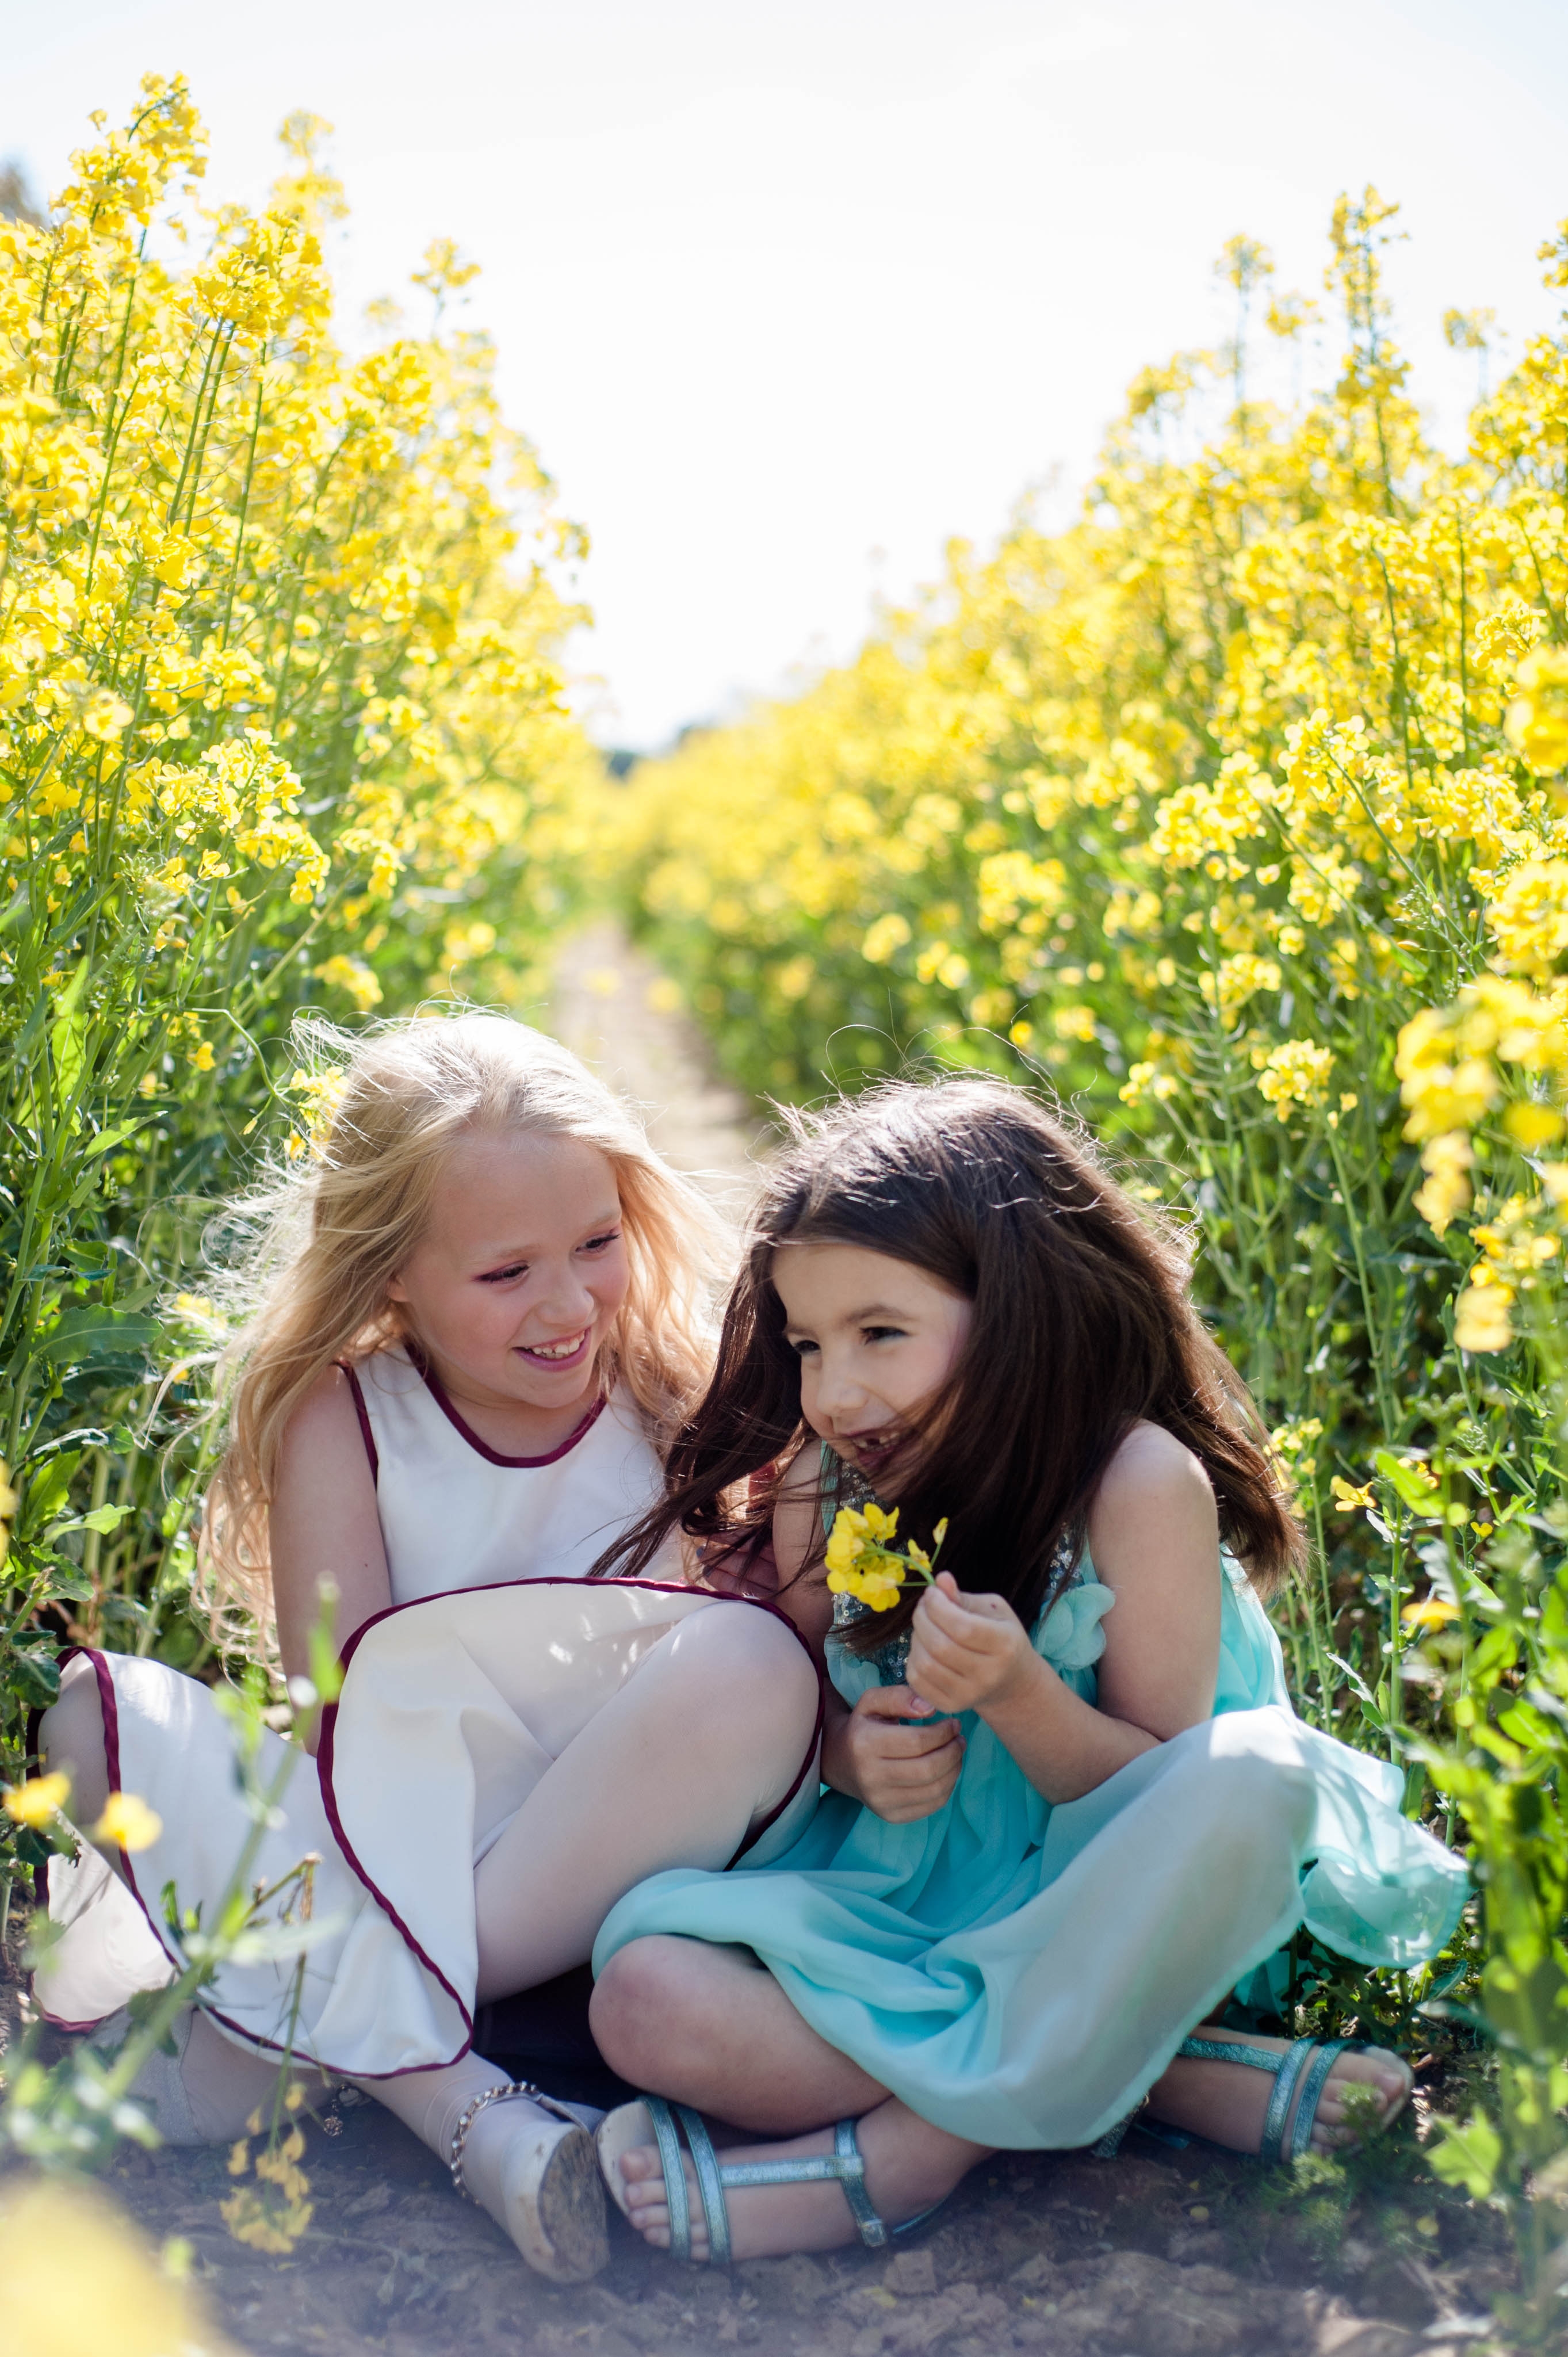 Séance photo enfants photographe de rouen ludivine fleury